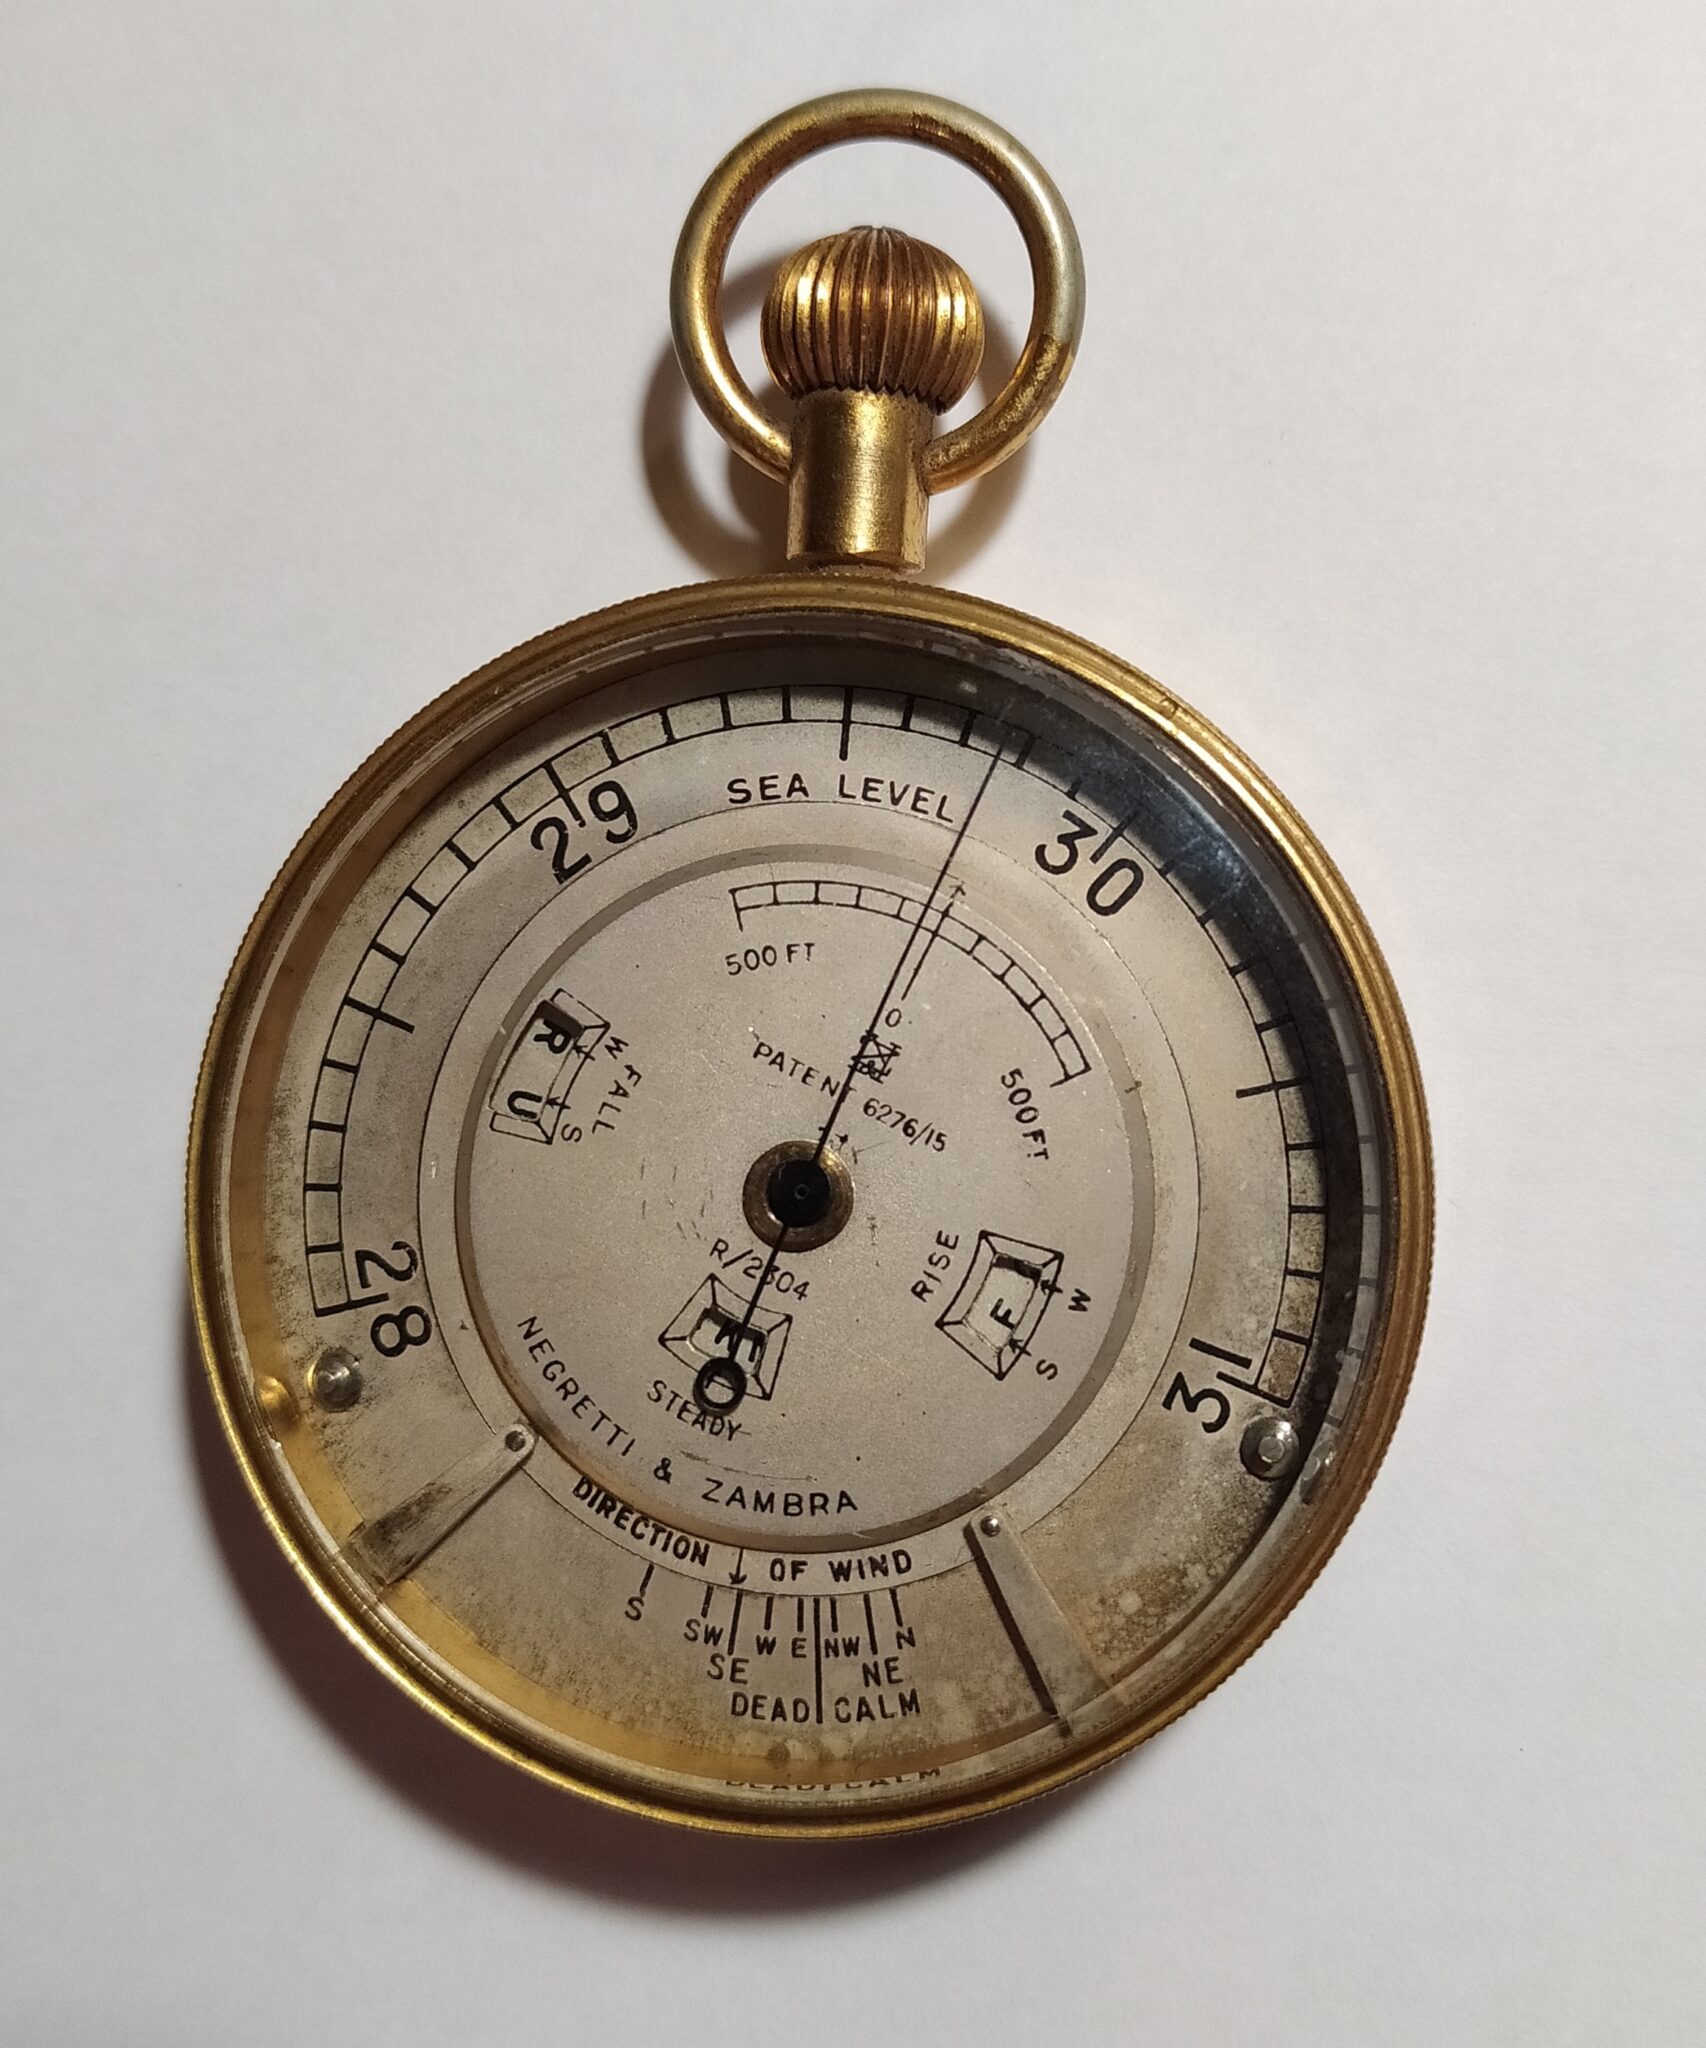 Rare weather watch pocket barometer by Negretti & Zambra